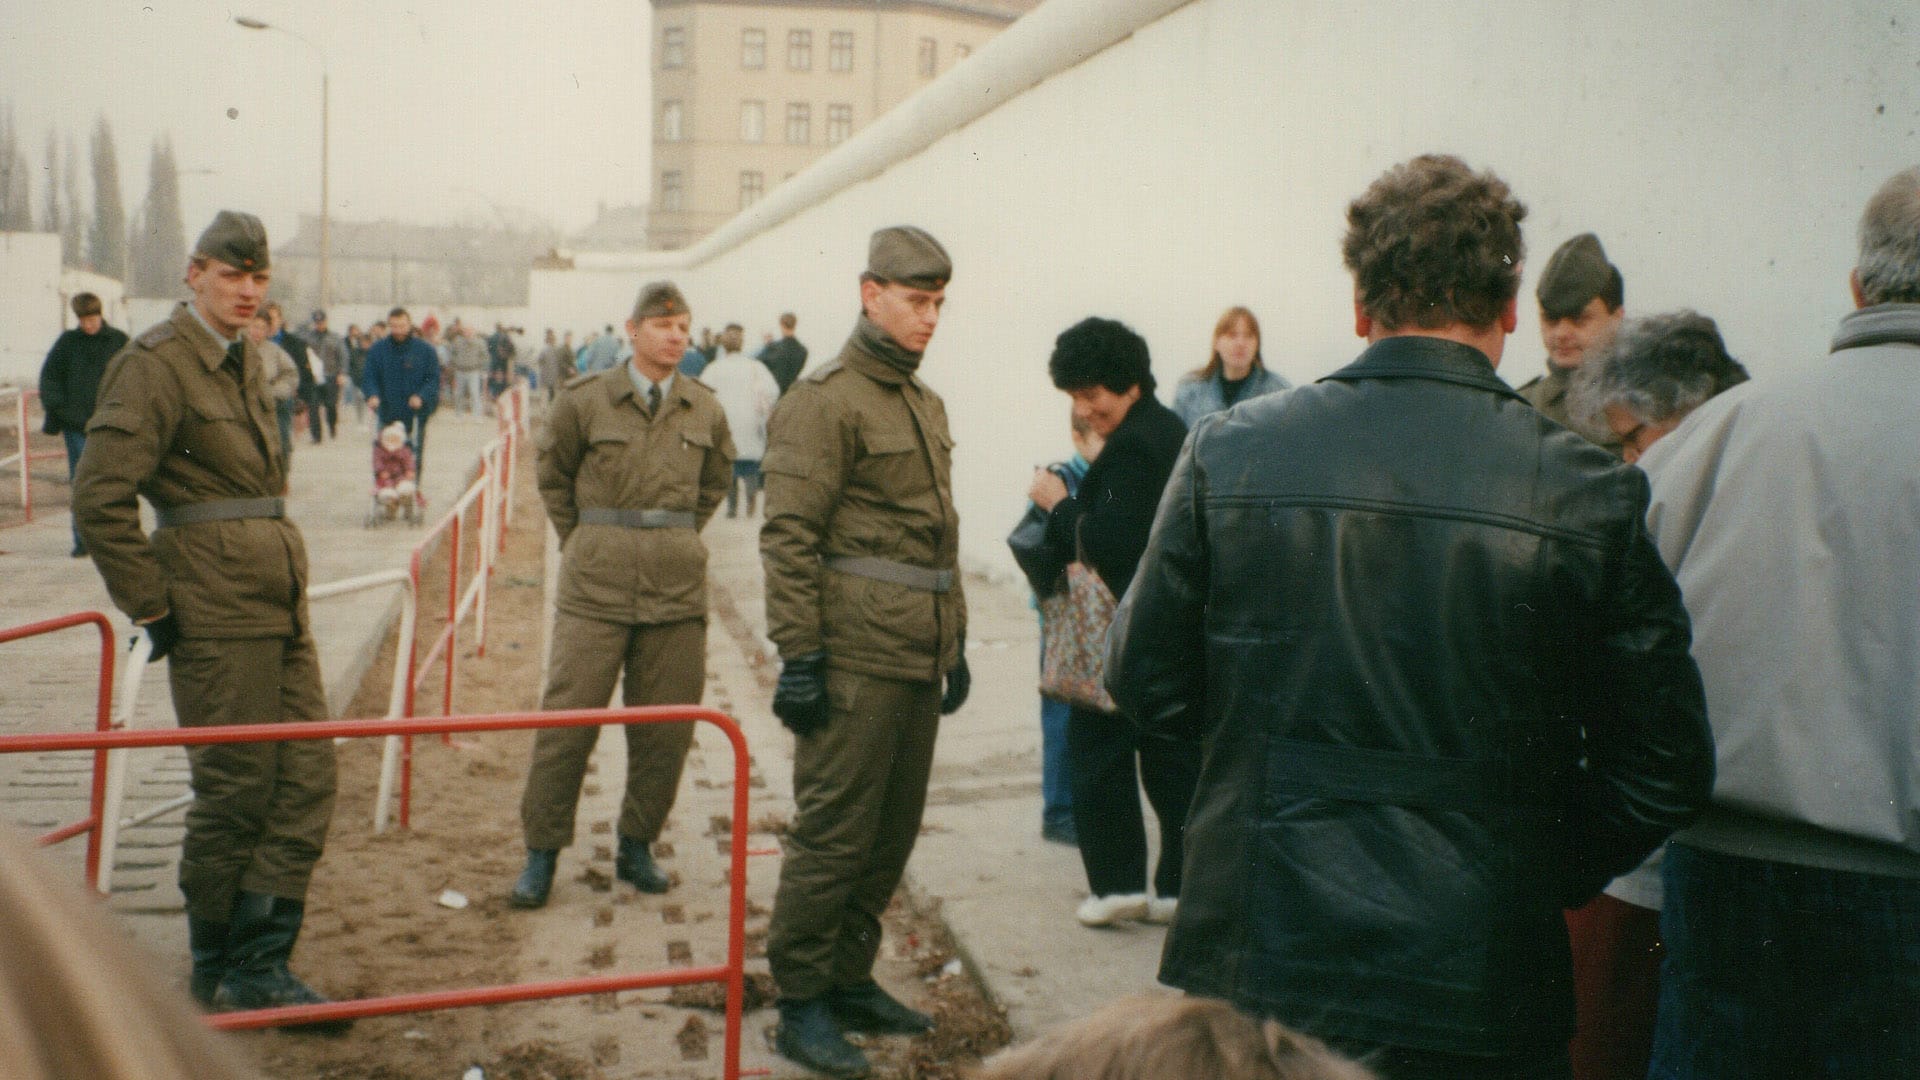 Die geöffnete Mauer an der Bernauer Straße, Nähe Brunnenstraße, Wedding, am 11. November 1989